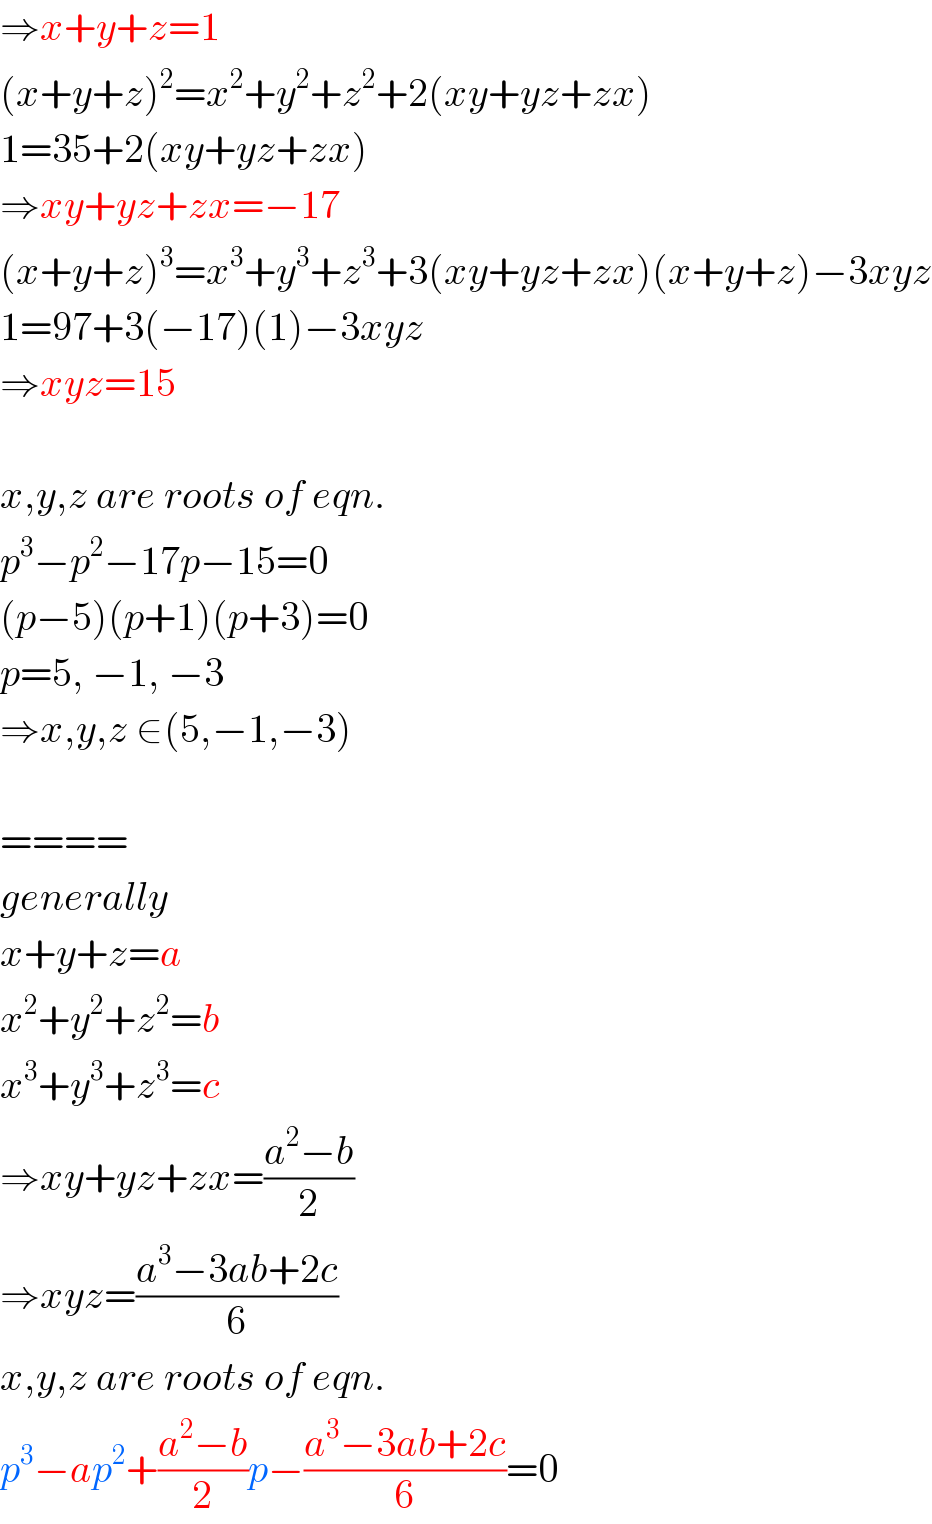 ⇒x+y+z=1  (x+y+z)^2 =x^2 +y^2 +z^2 +2(xy+yz+zx)  1=35+2(xy+yz+zx)  ⇒xy+yz+zx=−17  (x+y+z)^3 =x^3 +y^3 +z^3 +3(xy+yz+zx)(x+y+z)−3xyz  1=97+3(−17)(1)−3xyz  ⇒xyz=15    x,y,z are roots of eqn.  p^3 −p^2 −17p−15=0  (p−5)(p+1)(p+3)=0  p=5, −1, −3  ⇒x,y,z ∈(5,−1,−3)    ====  generally  x+y+z=a  x^2 +y^2 +z^2 =b  x^3 +y^3 +z^3 =c  ⇒xy+yz+zx=((a^2 −b)/2)  ⇒xyz=((a^3 −3ab+2c)/6)  x,y,z are roots of eqn.  p^3 −ap^2 +((a^2 −b)/2)p−((a^3 −3ab+2c)/6)=0  